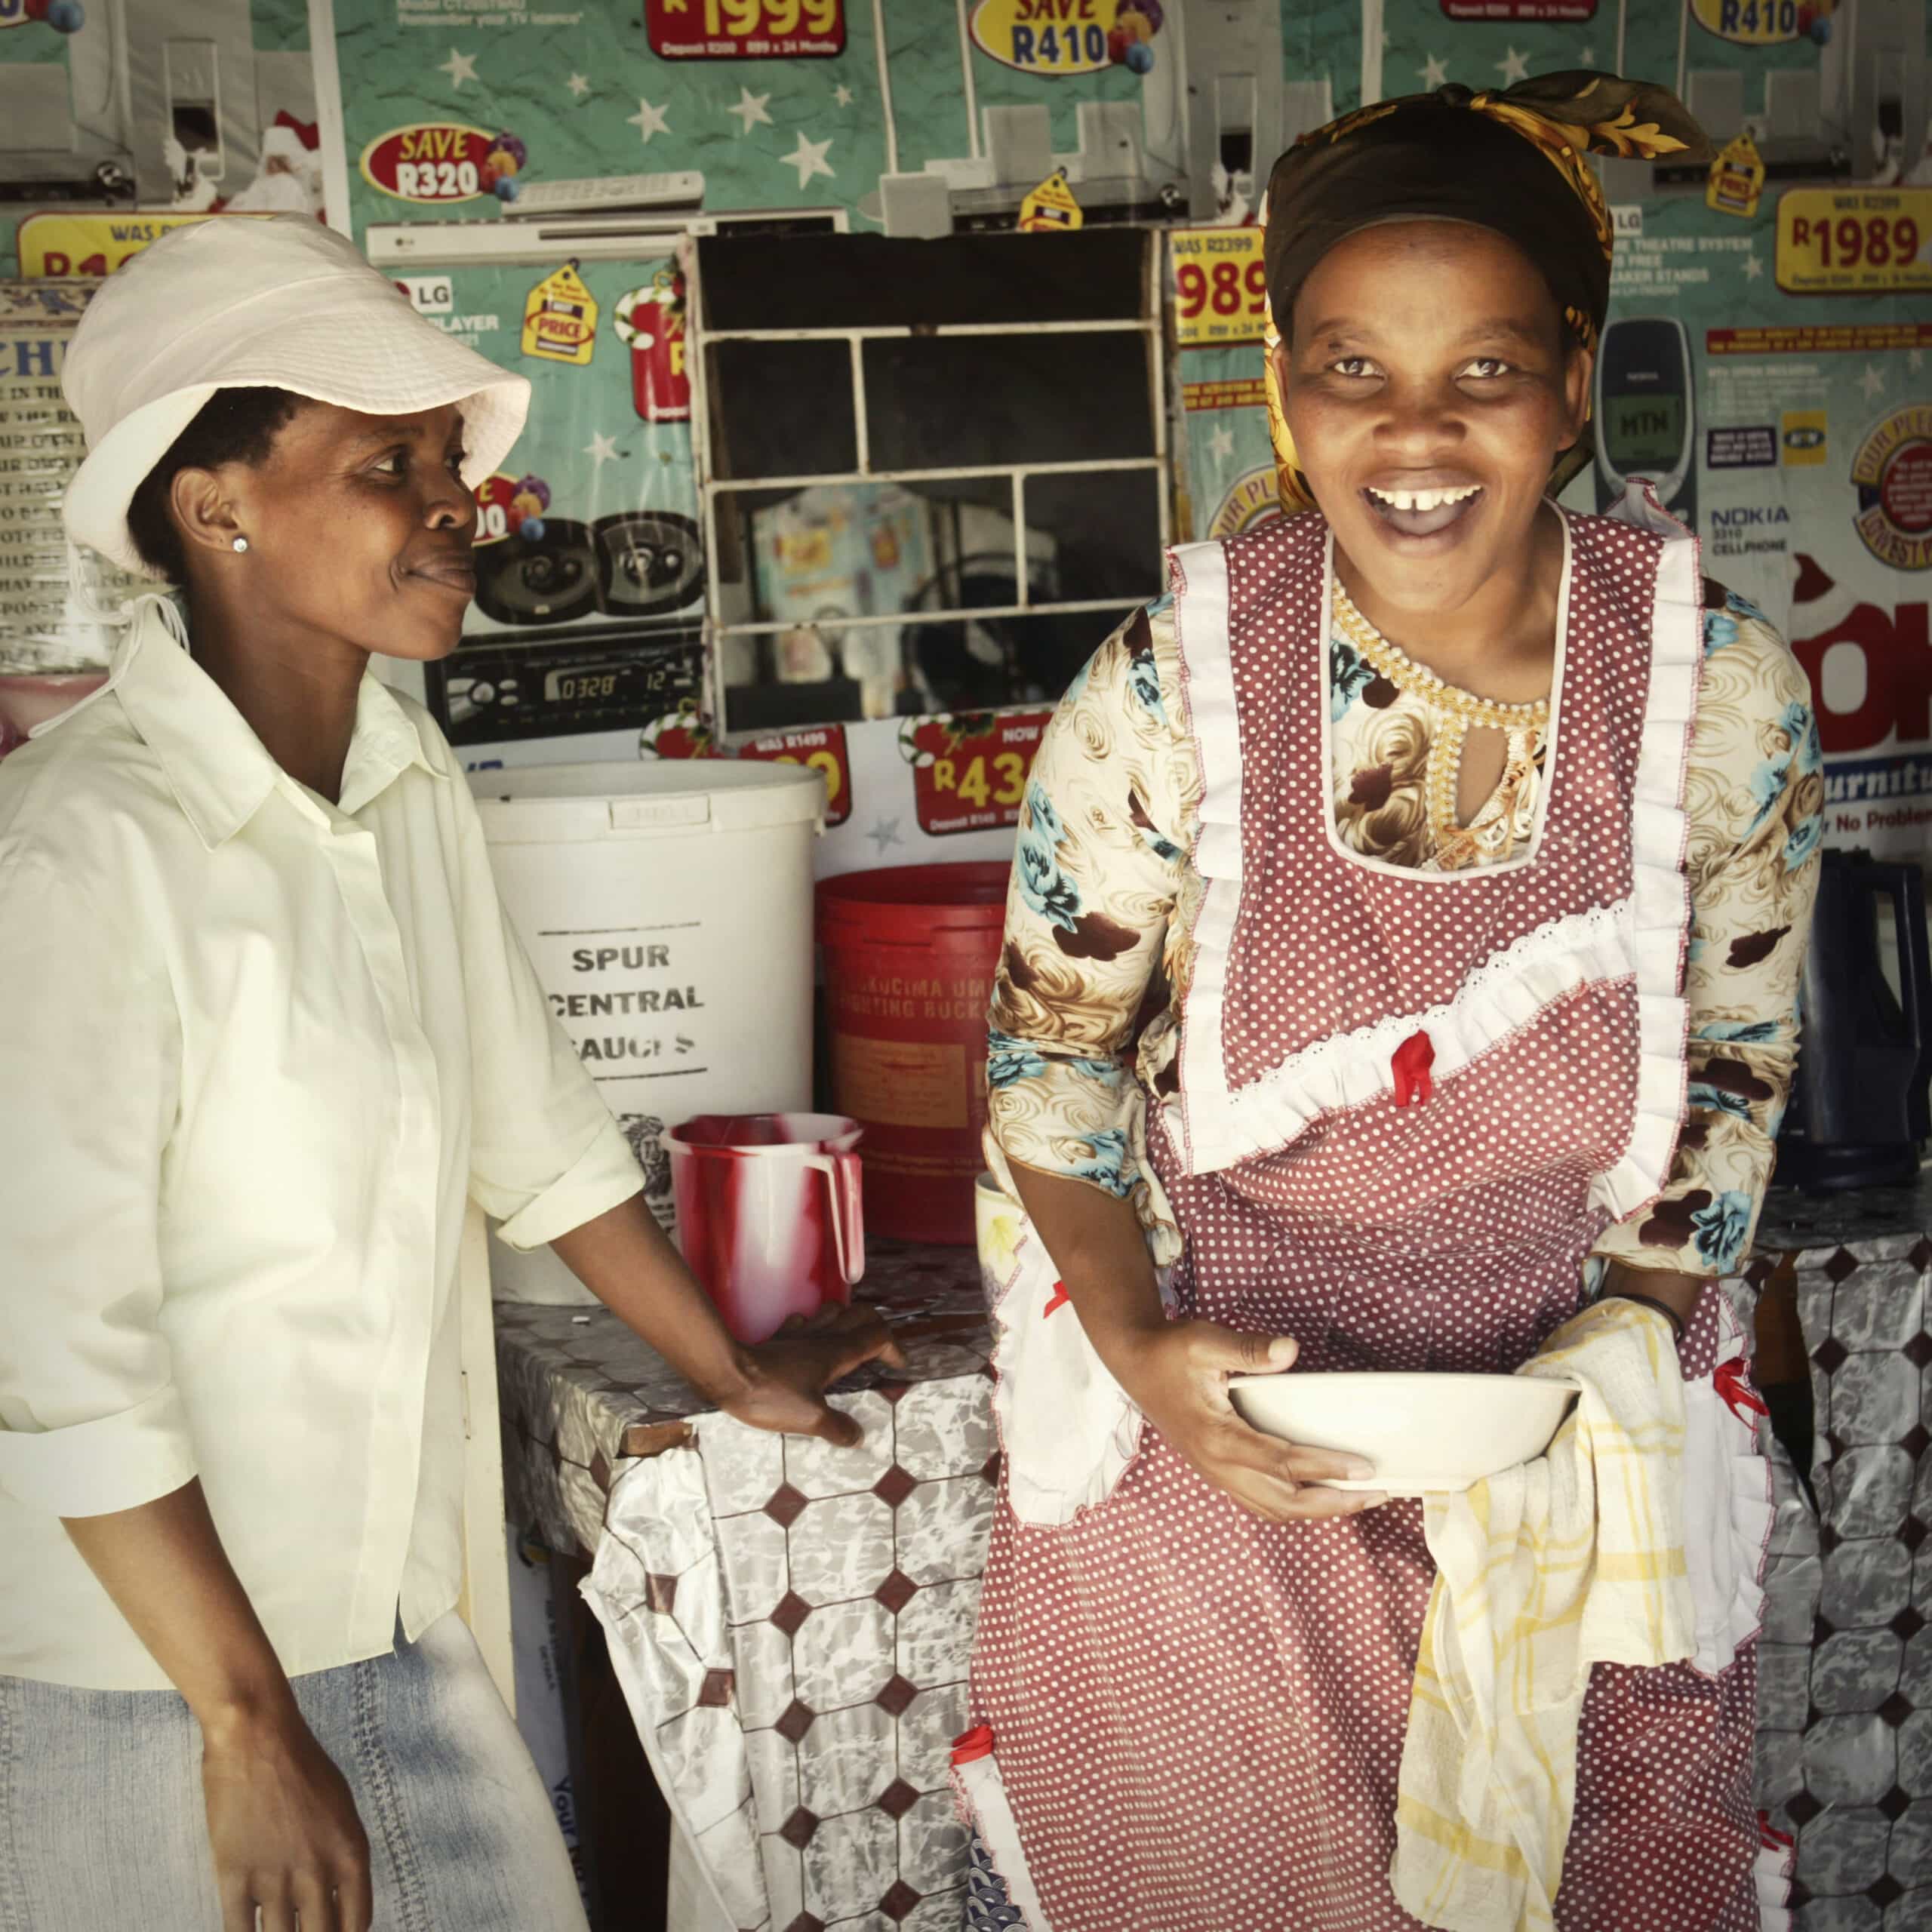 Zwei afrikanische Frauen verbringen einen freudigen Moment in einer gemütlichen, sonnendurchfluteten Küche. Die eine trägt eine Kochmütze und eine weiße Uniform und hört der anderen in einer bunten Schürze zu, die lacht und eine Schüssel hält. © Fotografie Tomas Rodriguez